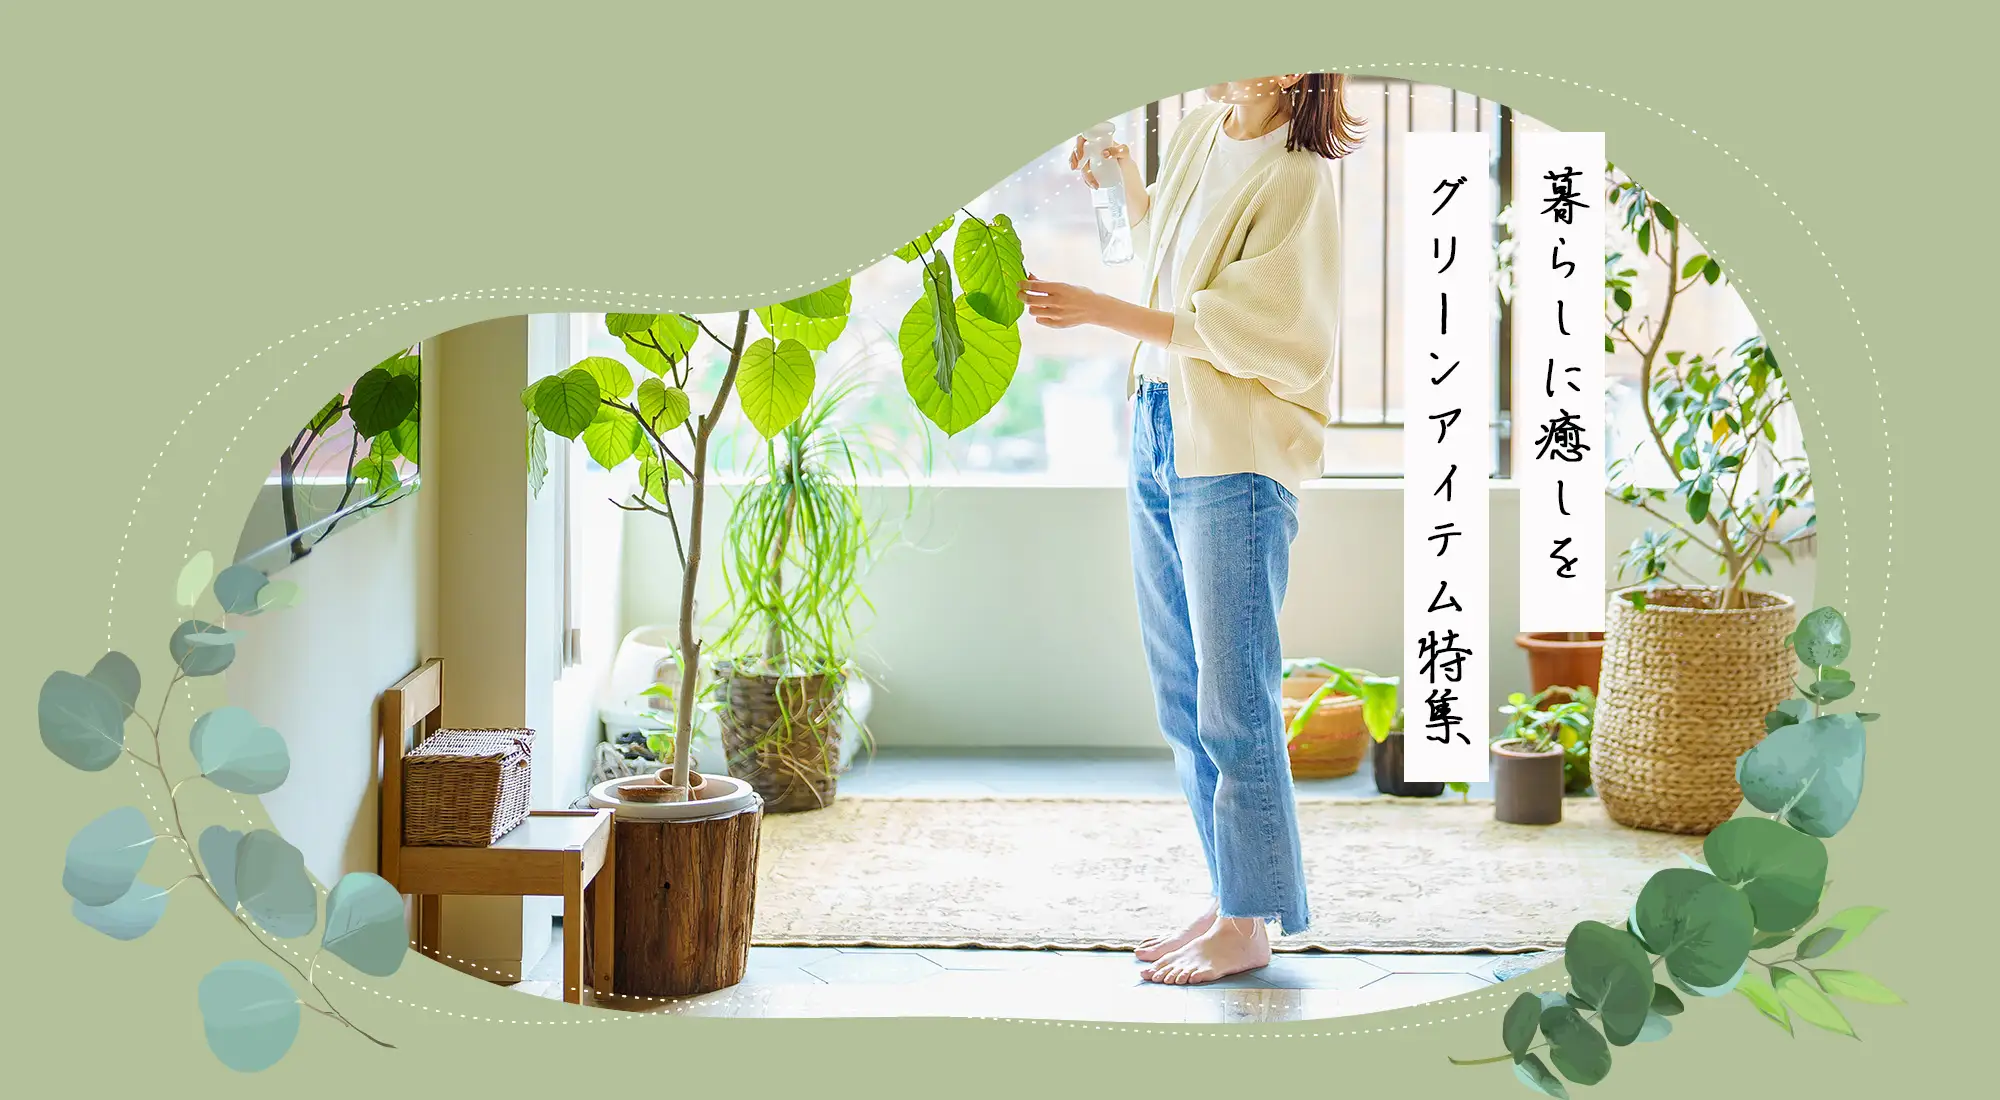 植物のある暮らしを愉しむ、家と庭と仕事の道具と衣類。ガーデニングツール（園芸用品）や日用品など。海外直接買い付けやオリジナルブランド